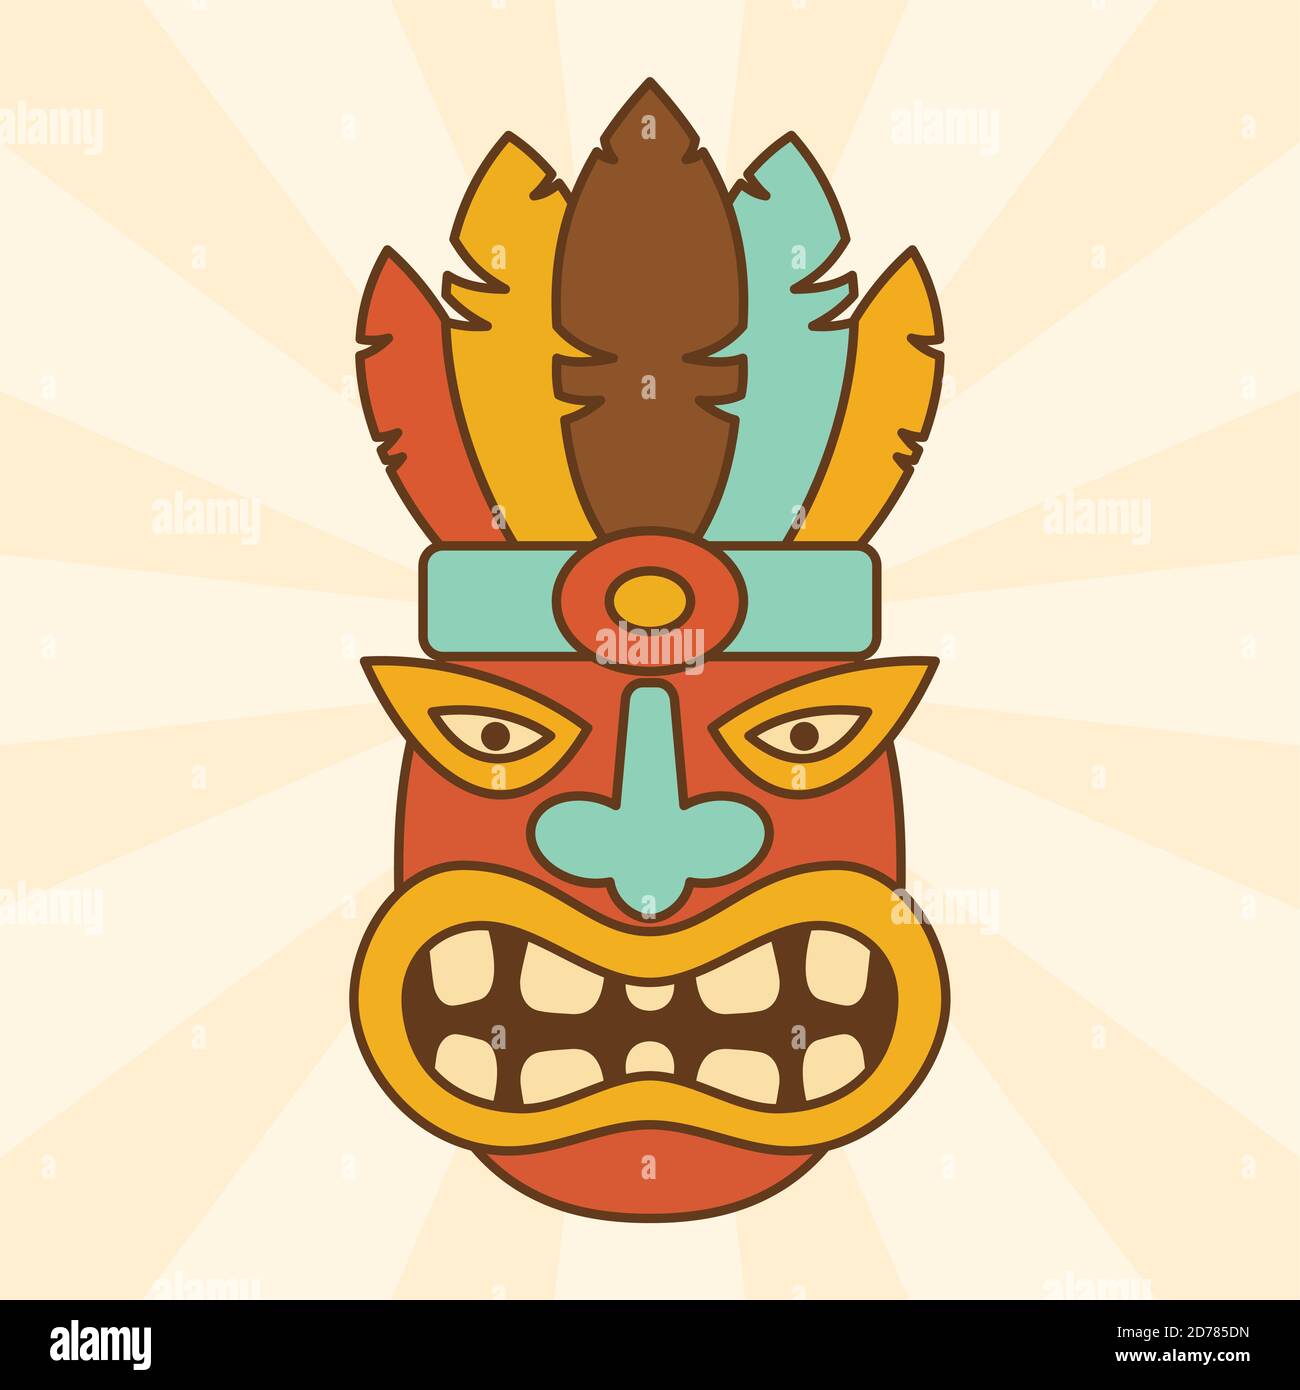 Dessin abstrait de dessin animé ethnique masque vecteur concept. Illustration du symbole aborigène traditionnel masqué. Illustration vectorielle EPS.8 EPS.10 Illustration de Vecteur